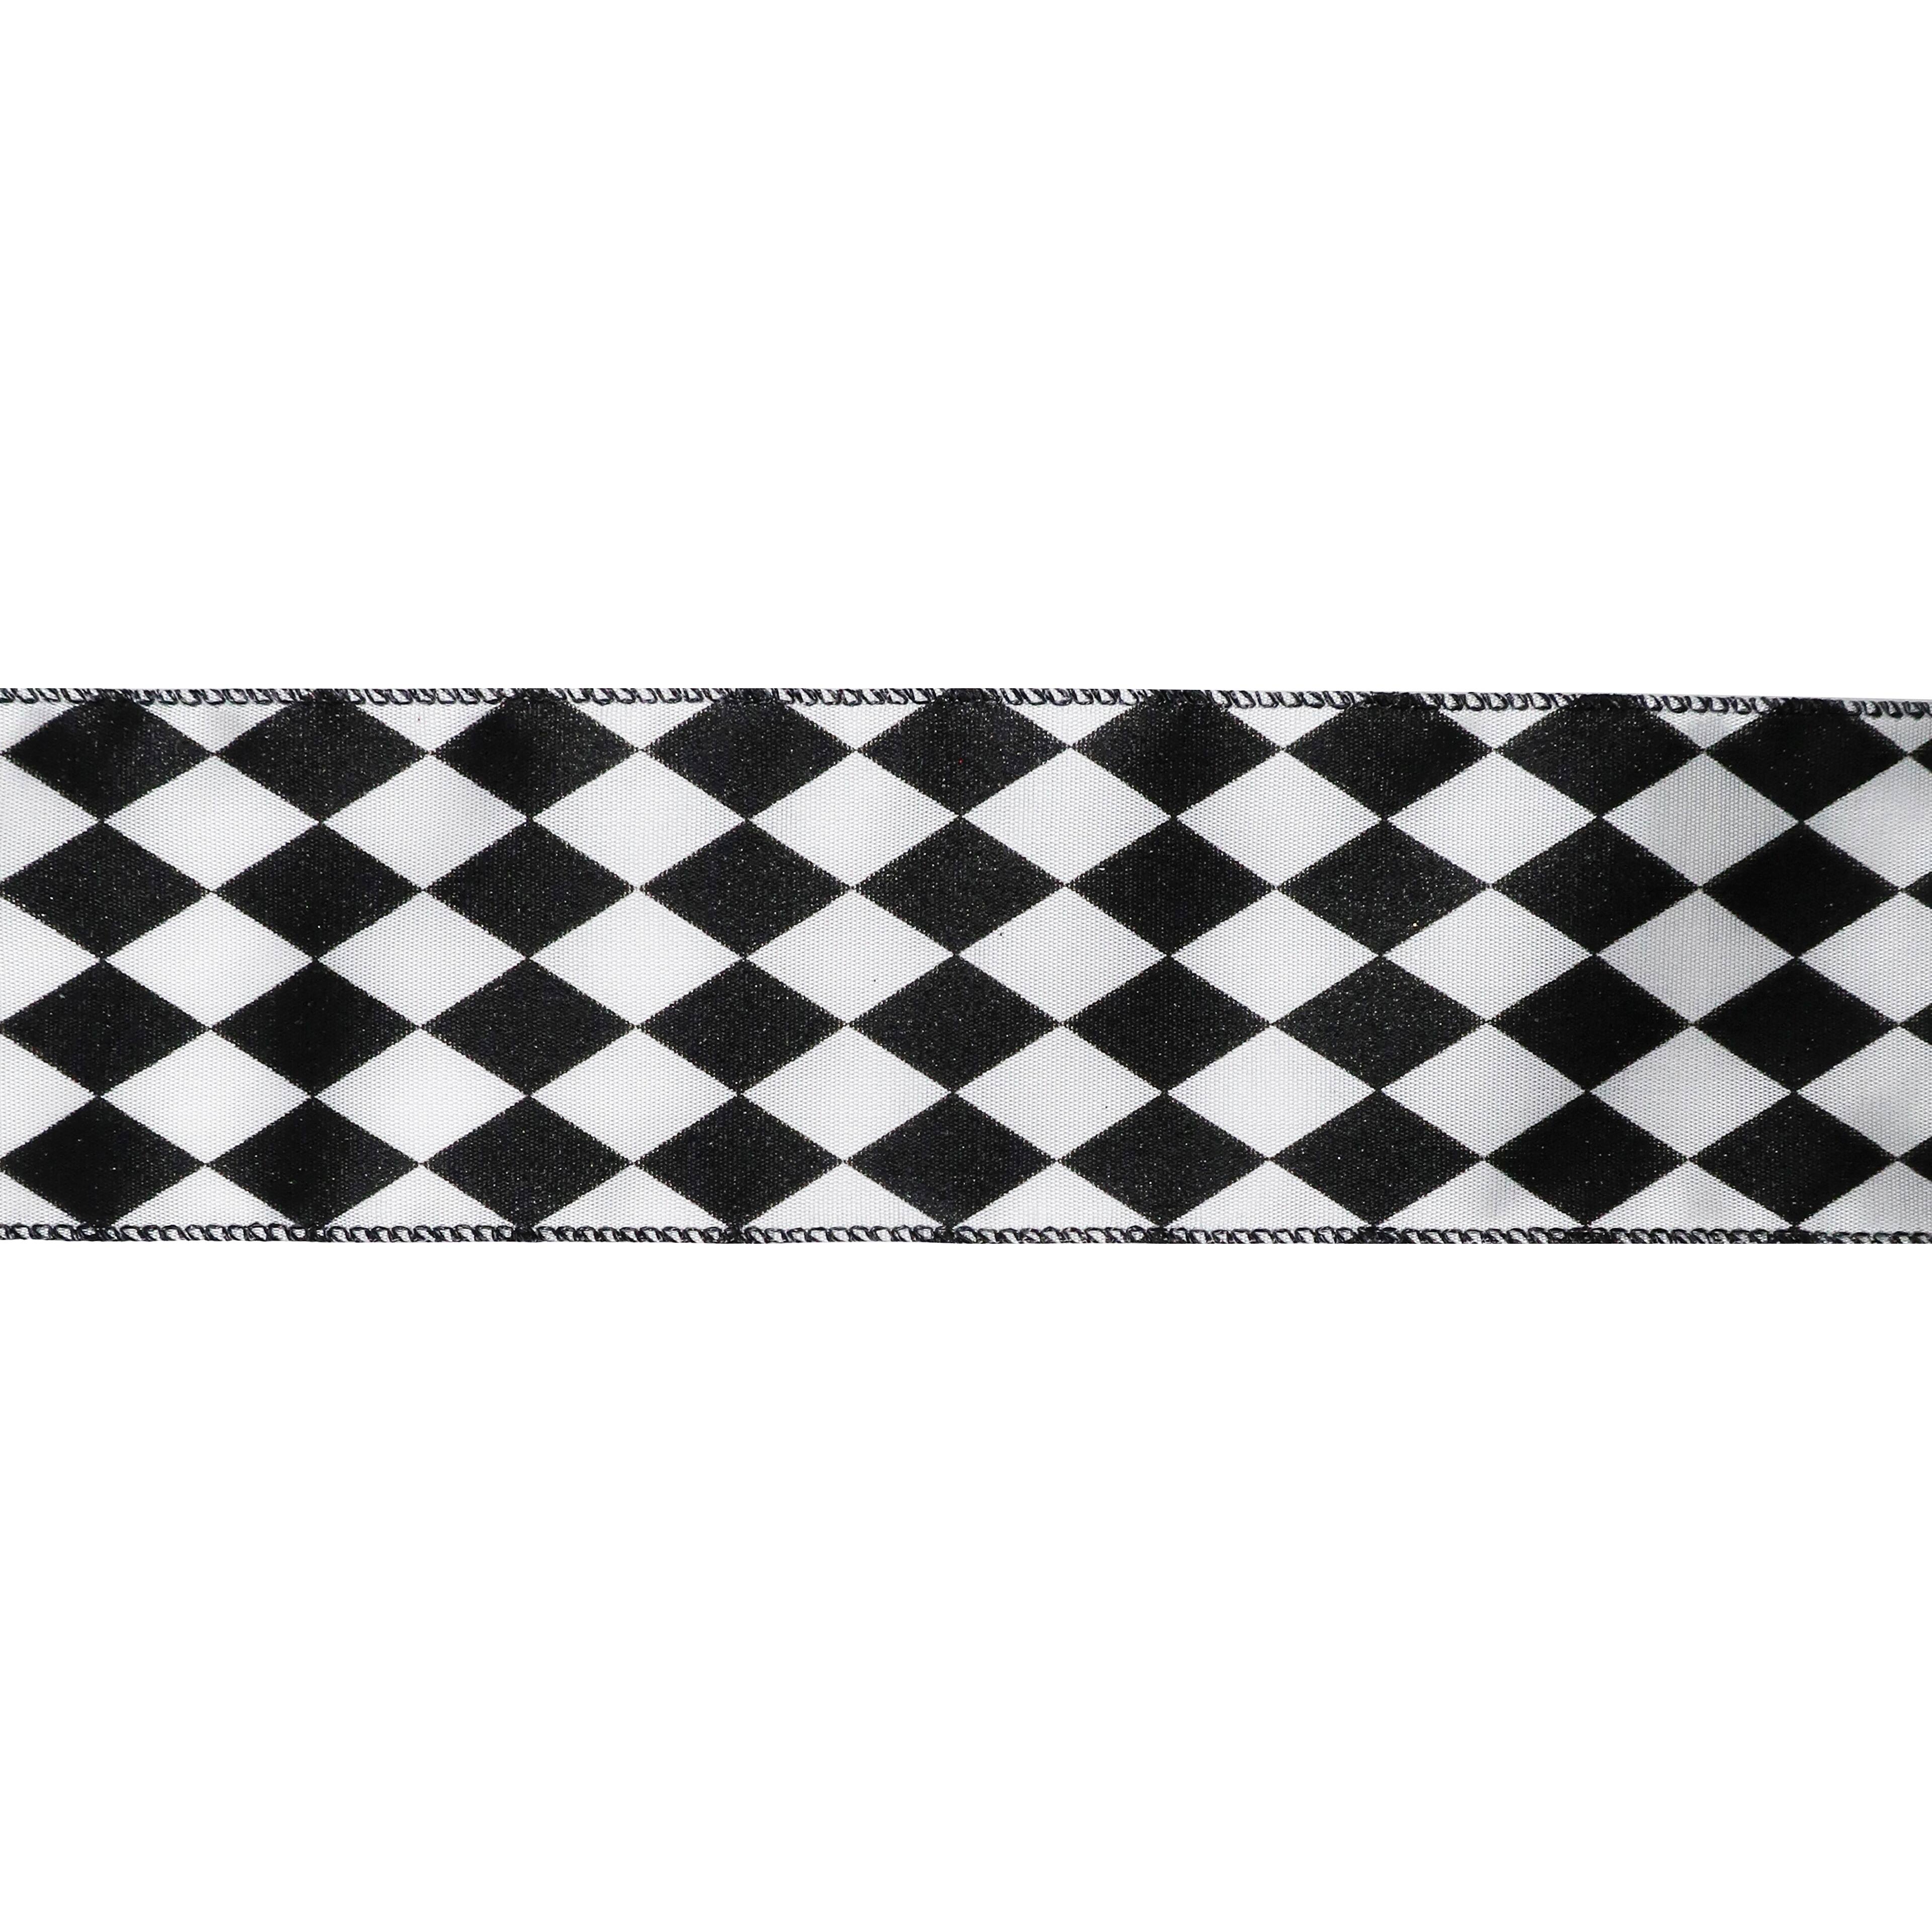 2.5 Linen Race Check Ribbon: Black & White (50 Yards) [851-40-302] 